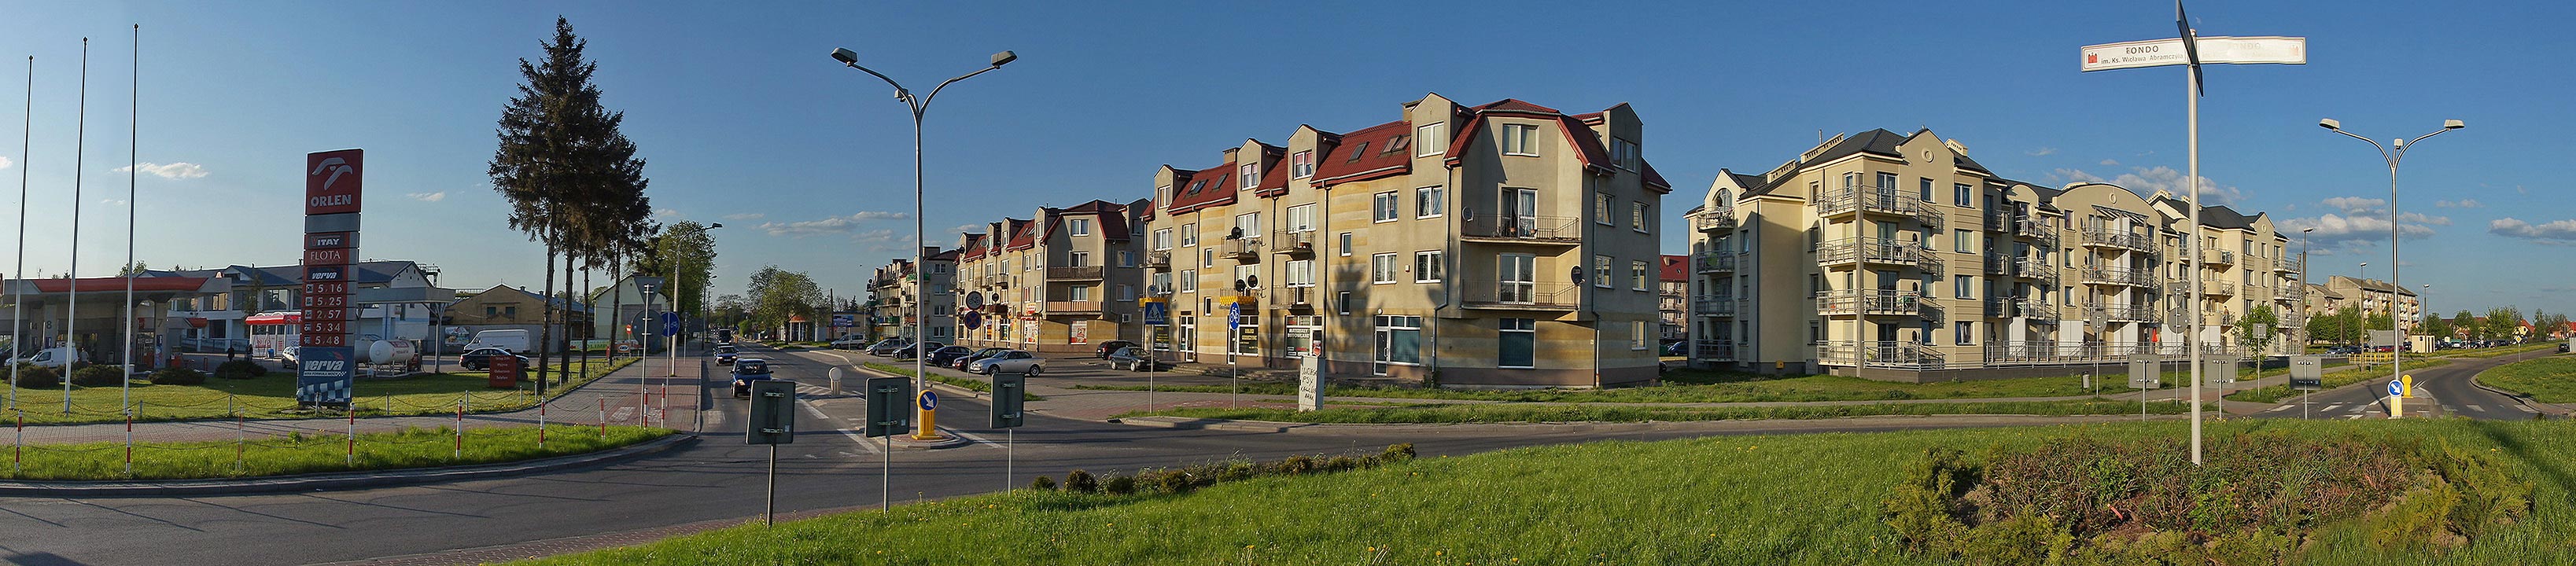 Widok z ronda na bloki przy ulicy Pockiej i Witosa, 30.04.2011 r.